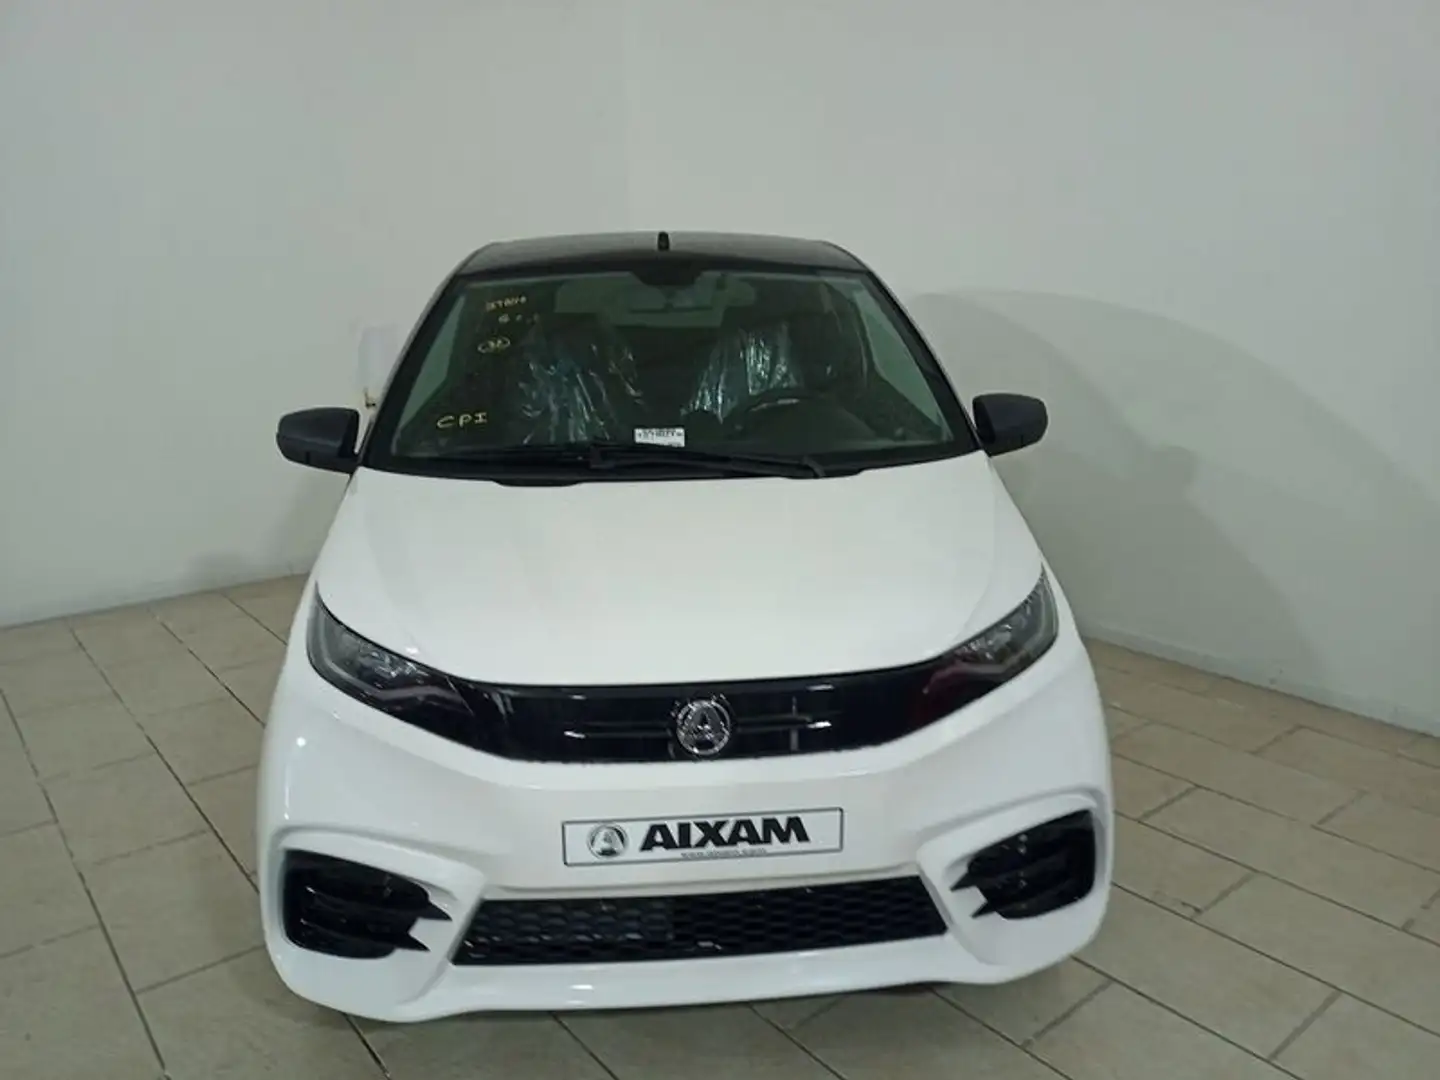 Aixam City AIXAM nuovi modelli AMBITION GTO - 2